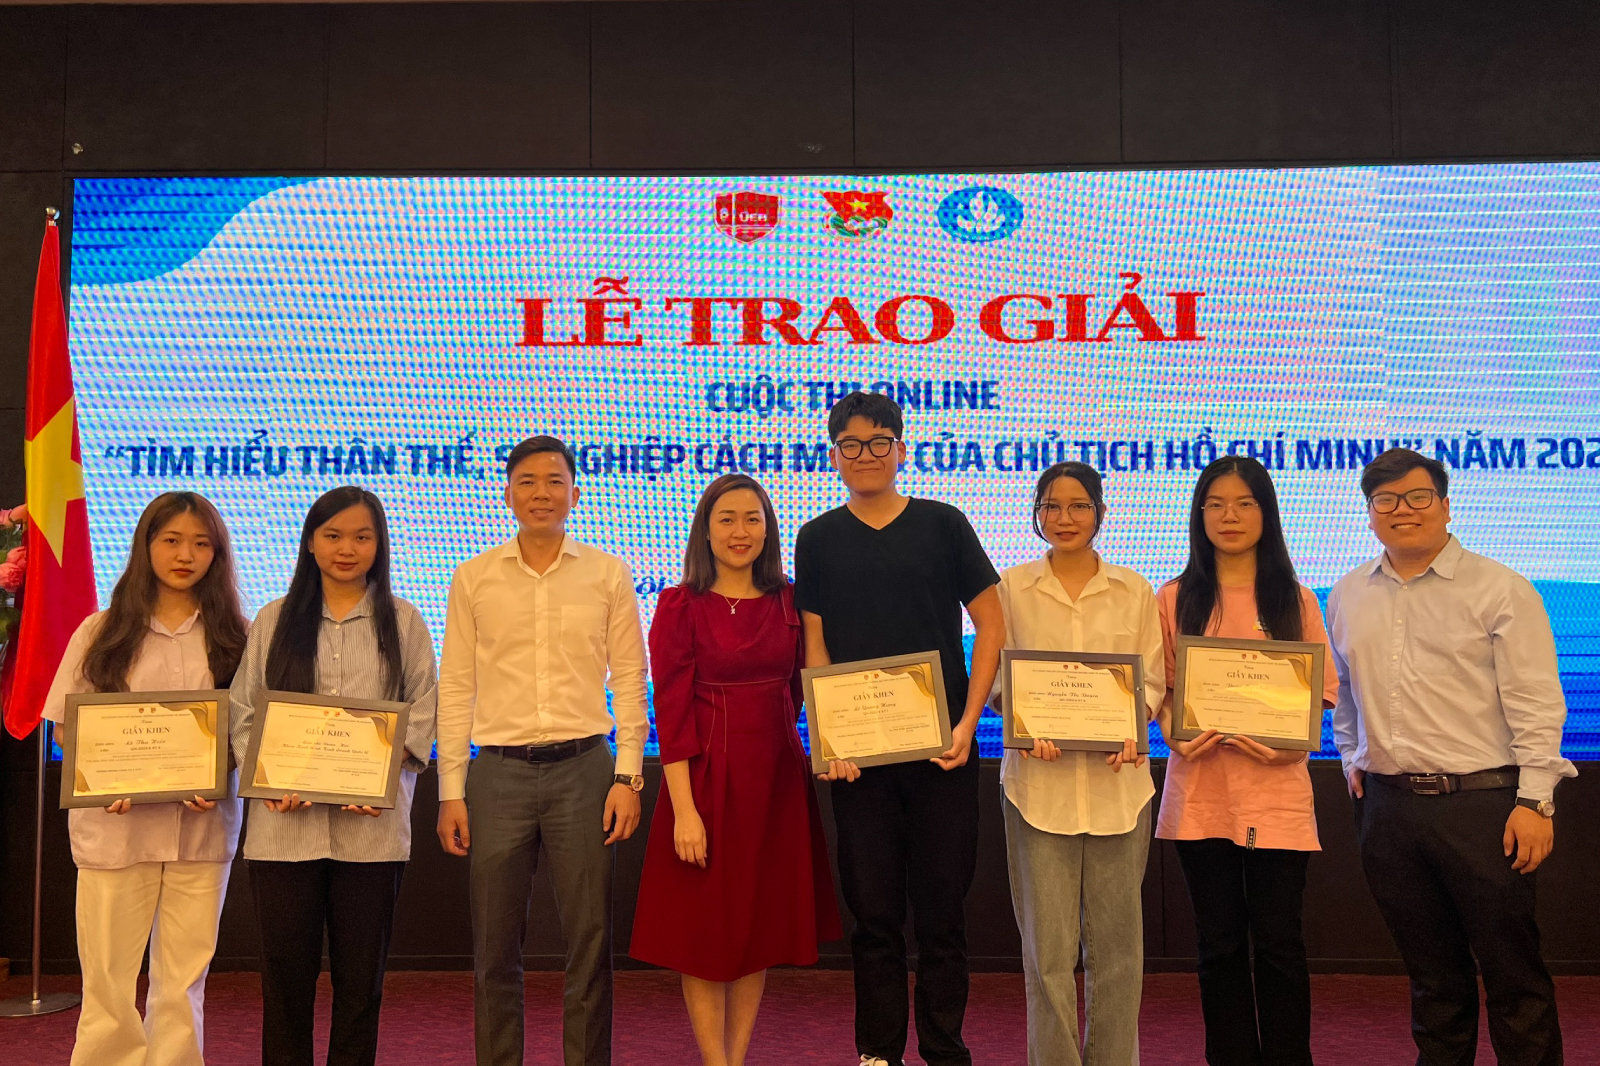 Lễ trao giải cuộc thi online “Tìm hiểu về thân thế, sự nghiệp và tư tưởng của Chủ tịch Hồ Chí Minh”